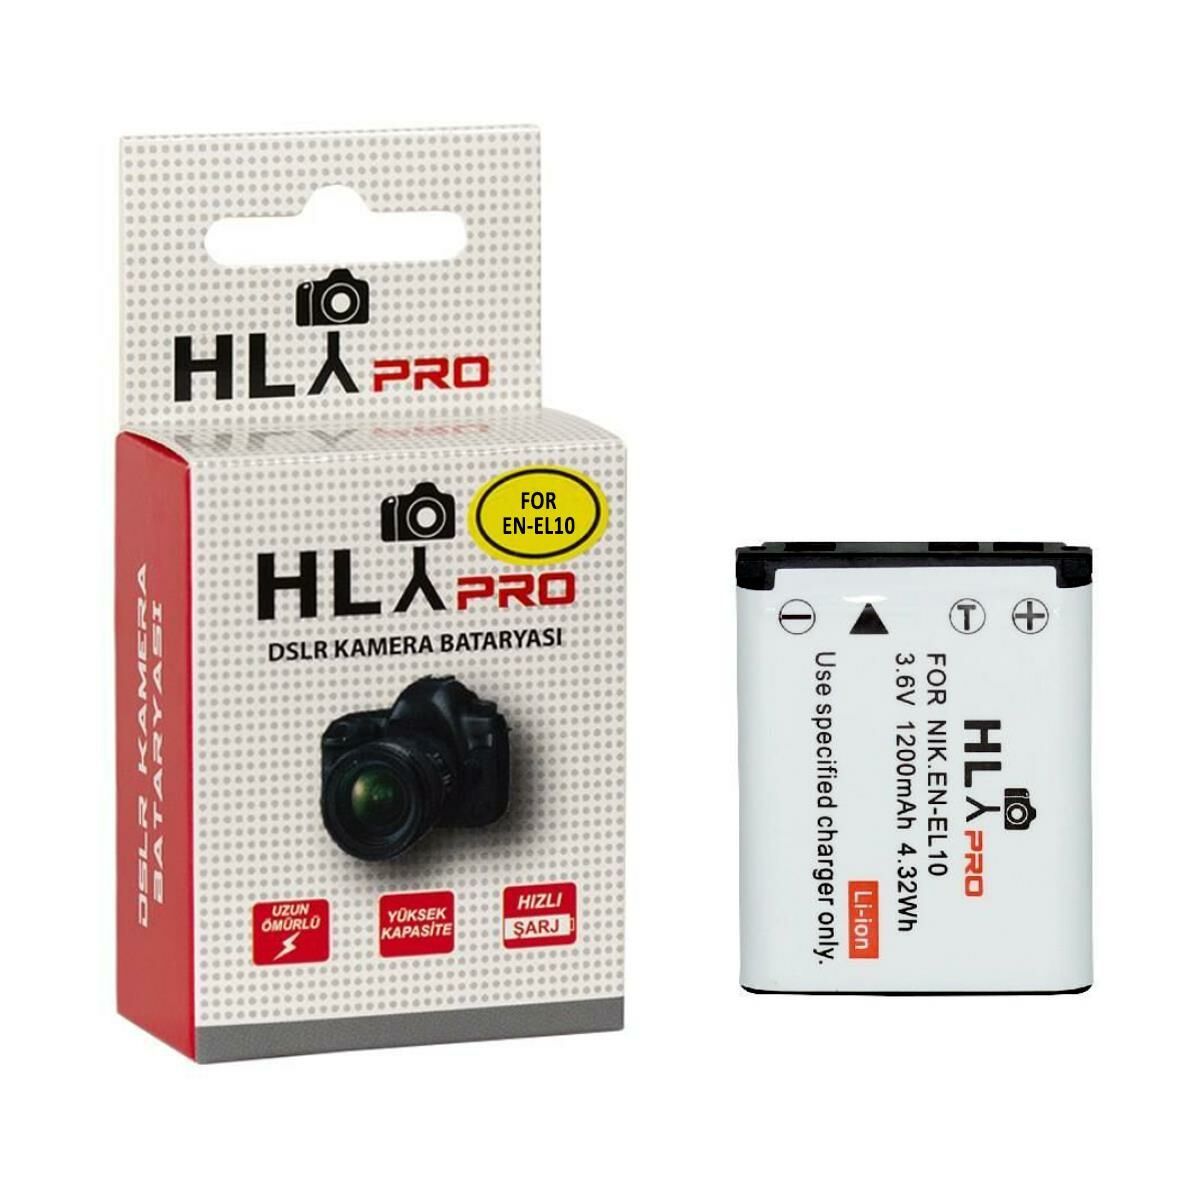 Hlypro Nikon Coolpix S230 için EN-EL10 Batarya